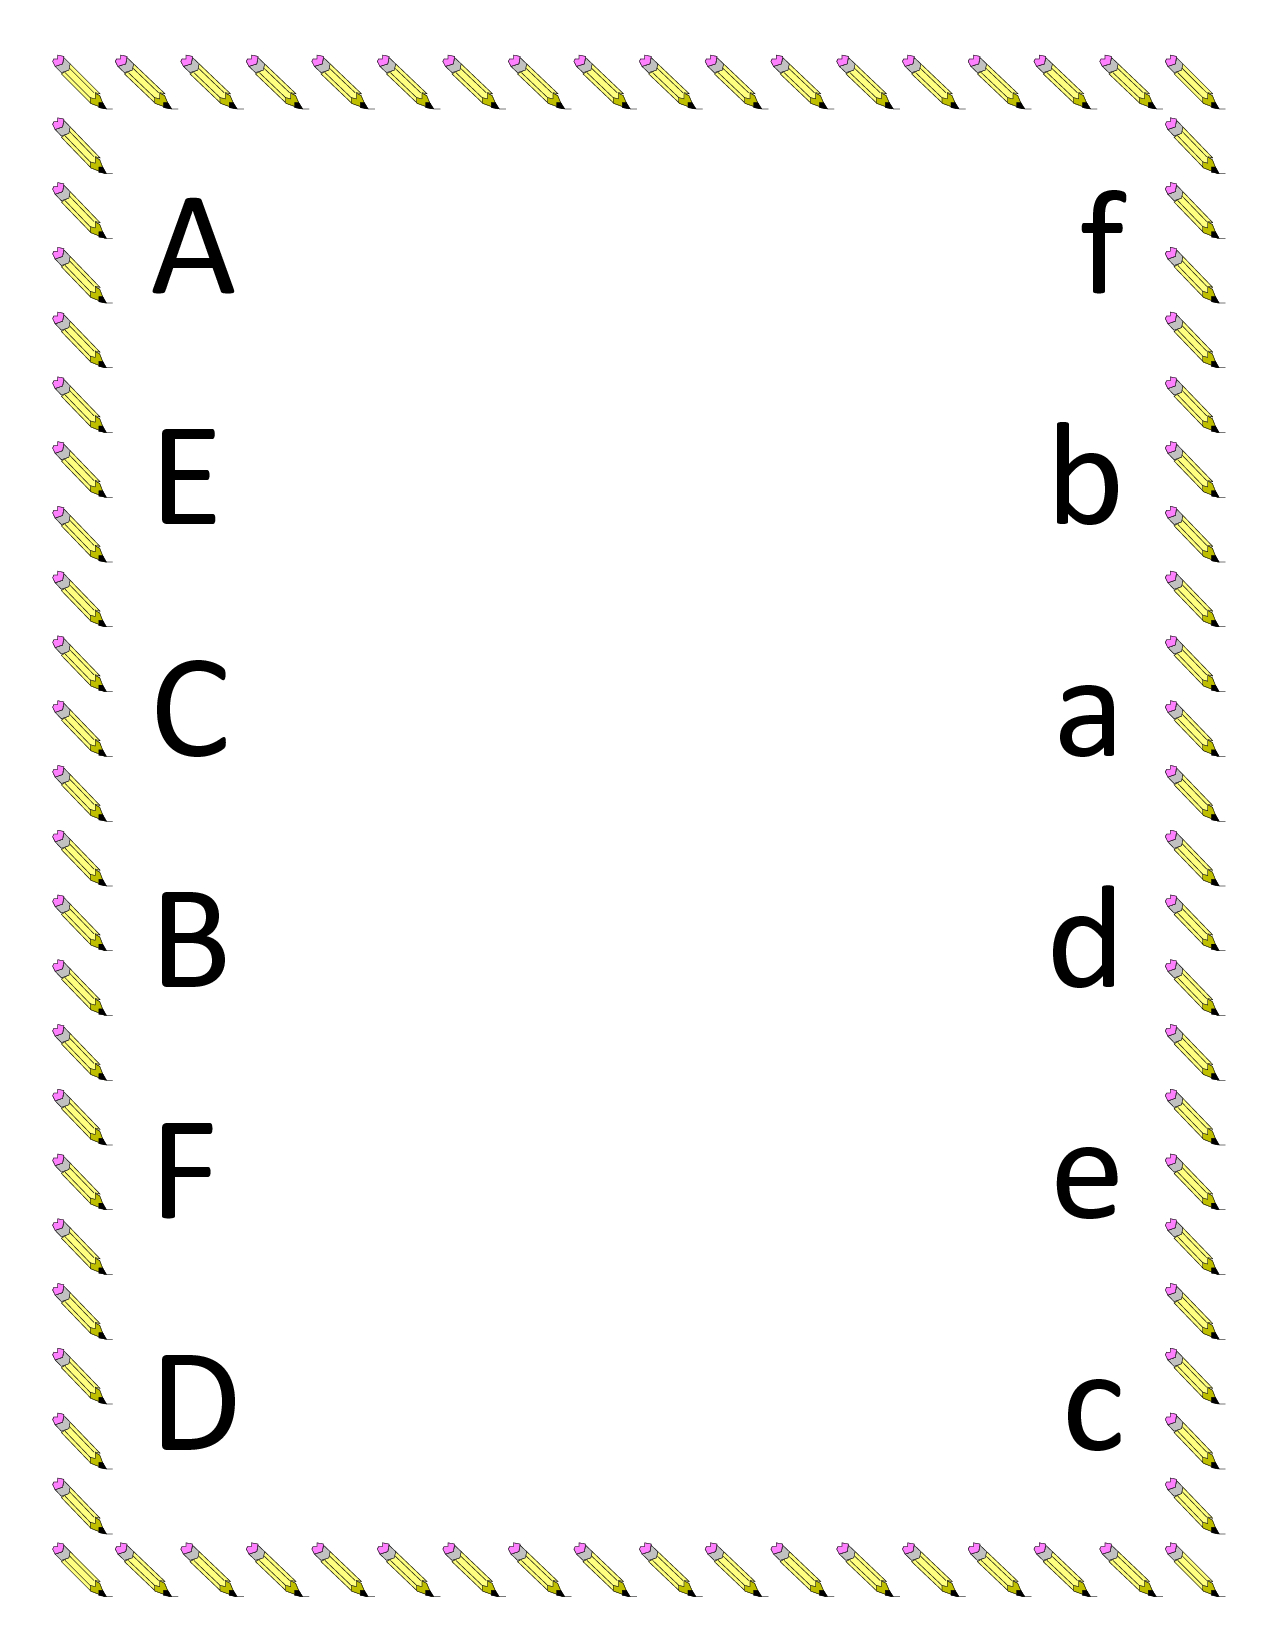 Kindergarten Worksheets | Preschool Matching Worksheets - Upper | Abc Matching Worksheets Printable